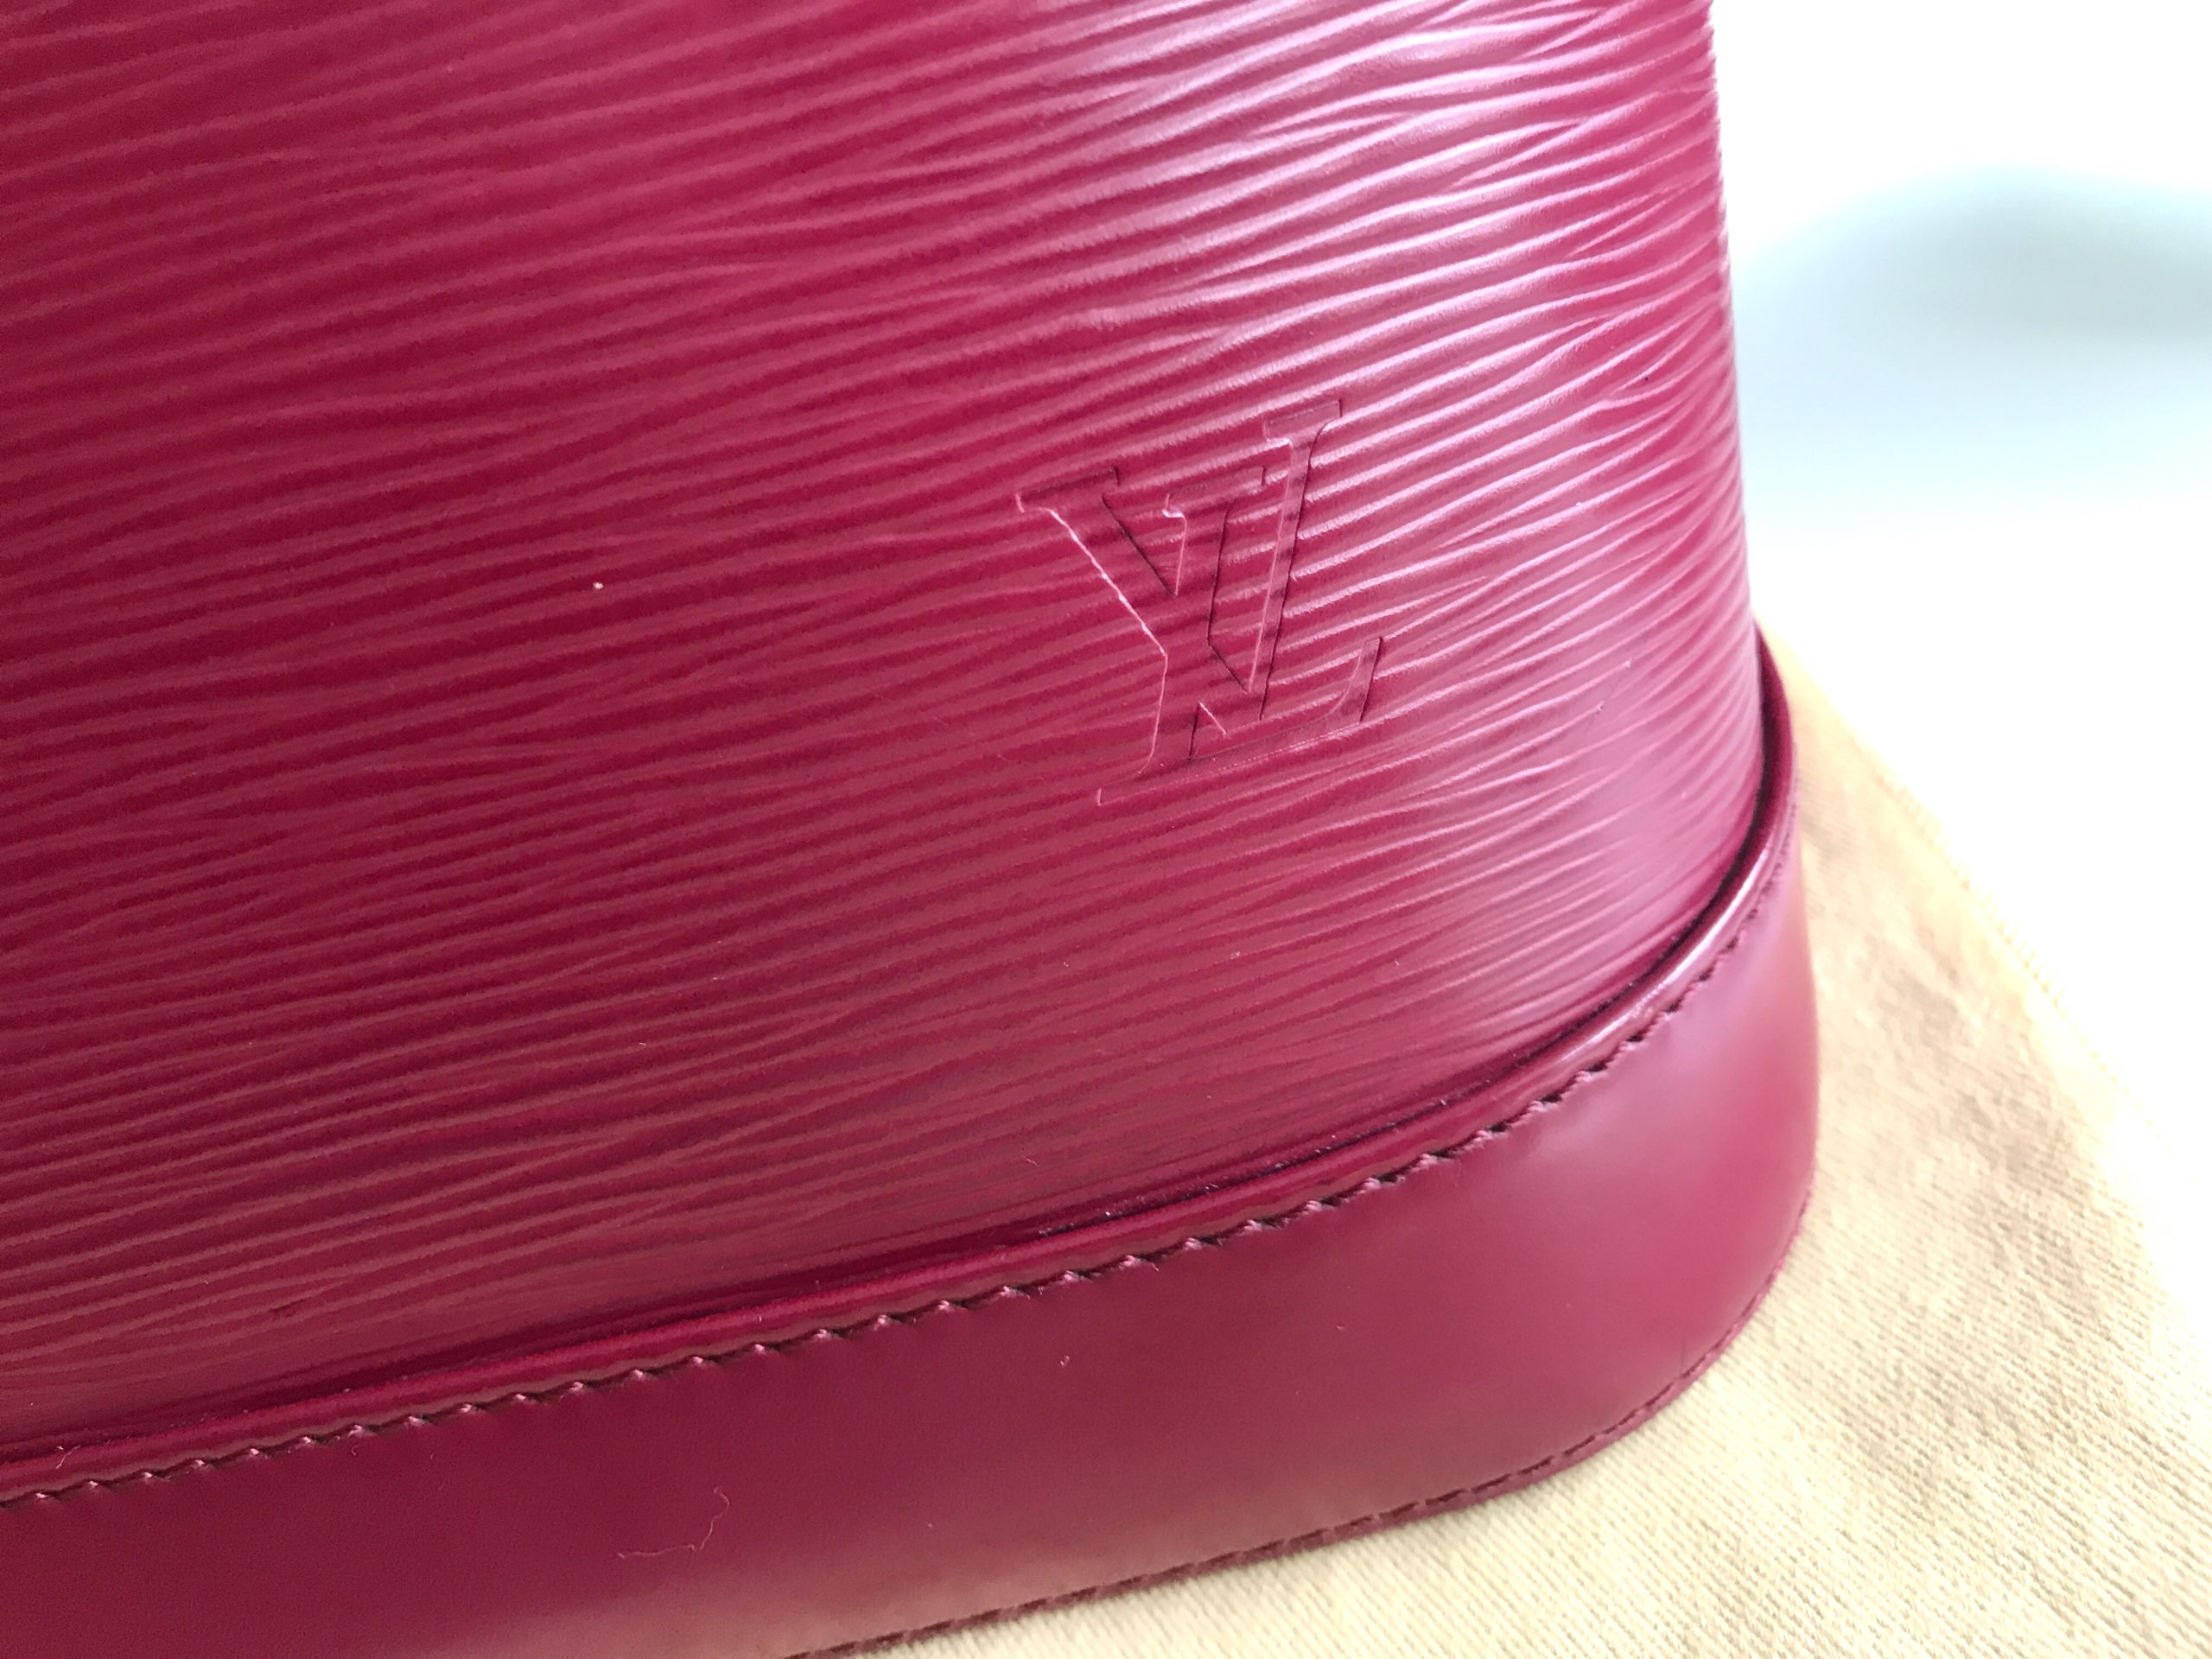 Louis Vuitton Alma Epi Leather Grenade Handbag